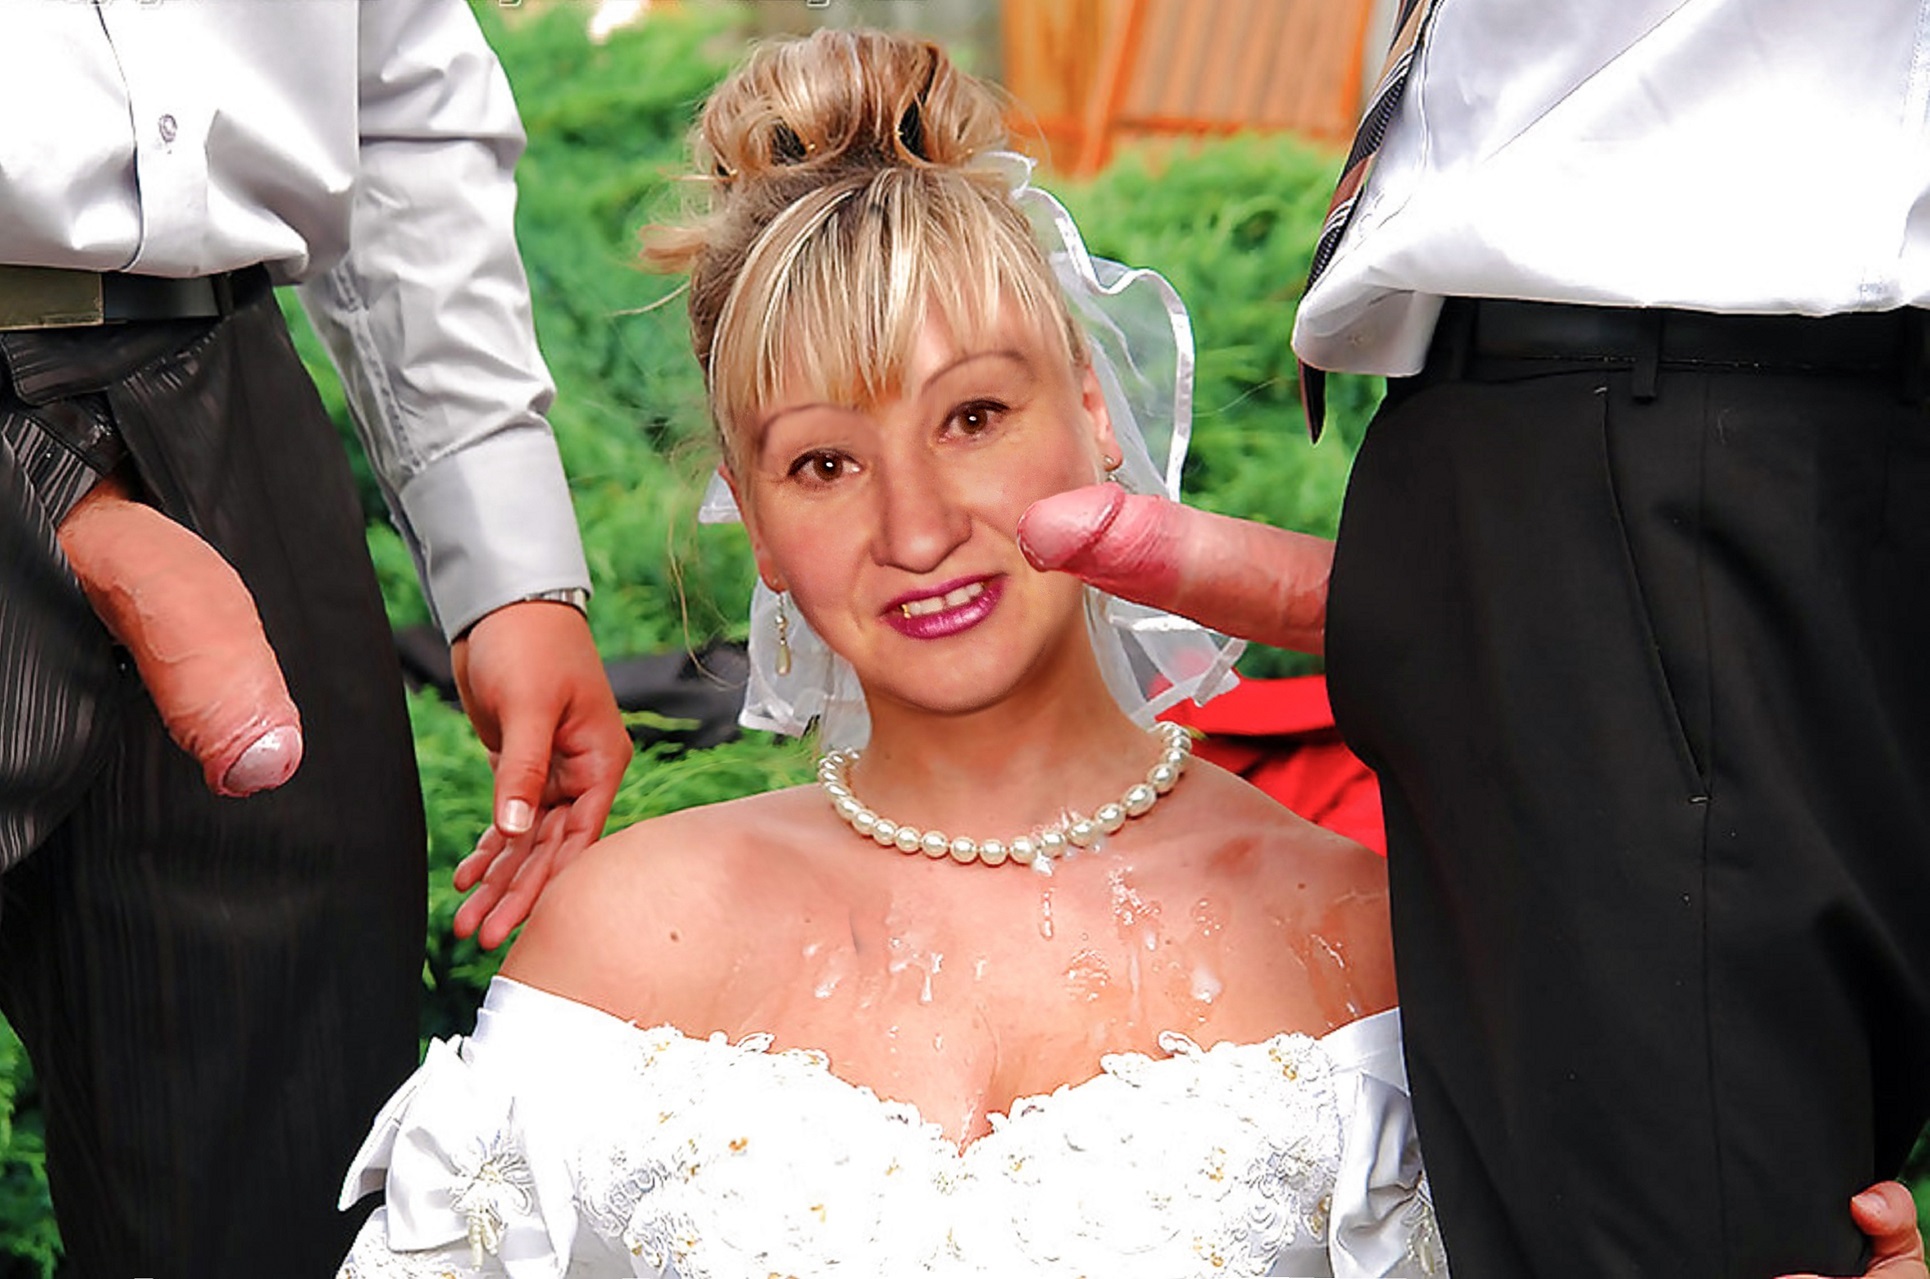 Bride bukkake pic